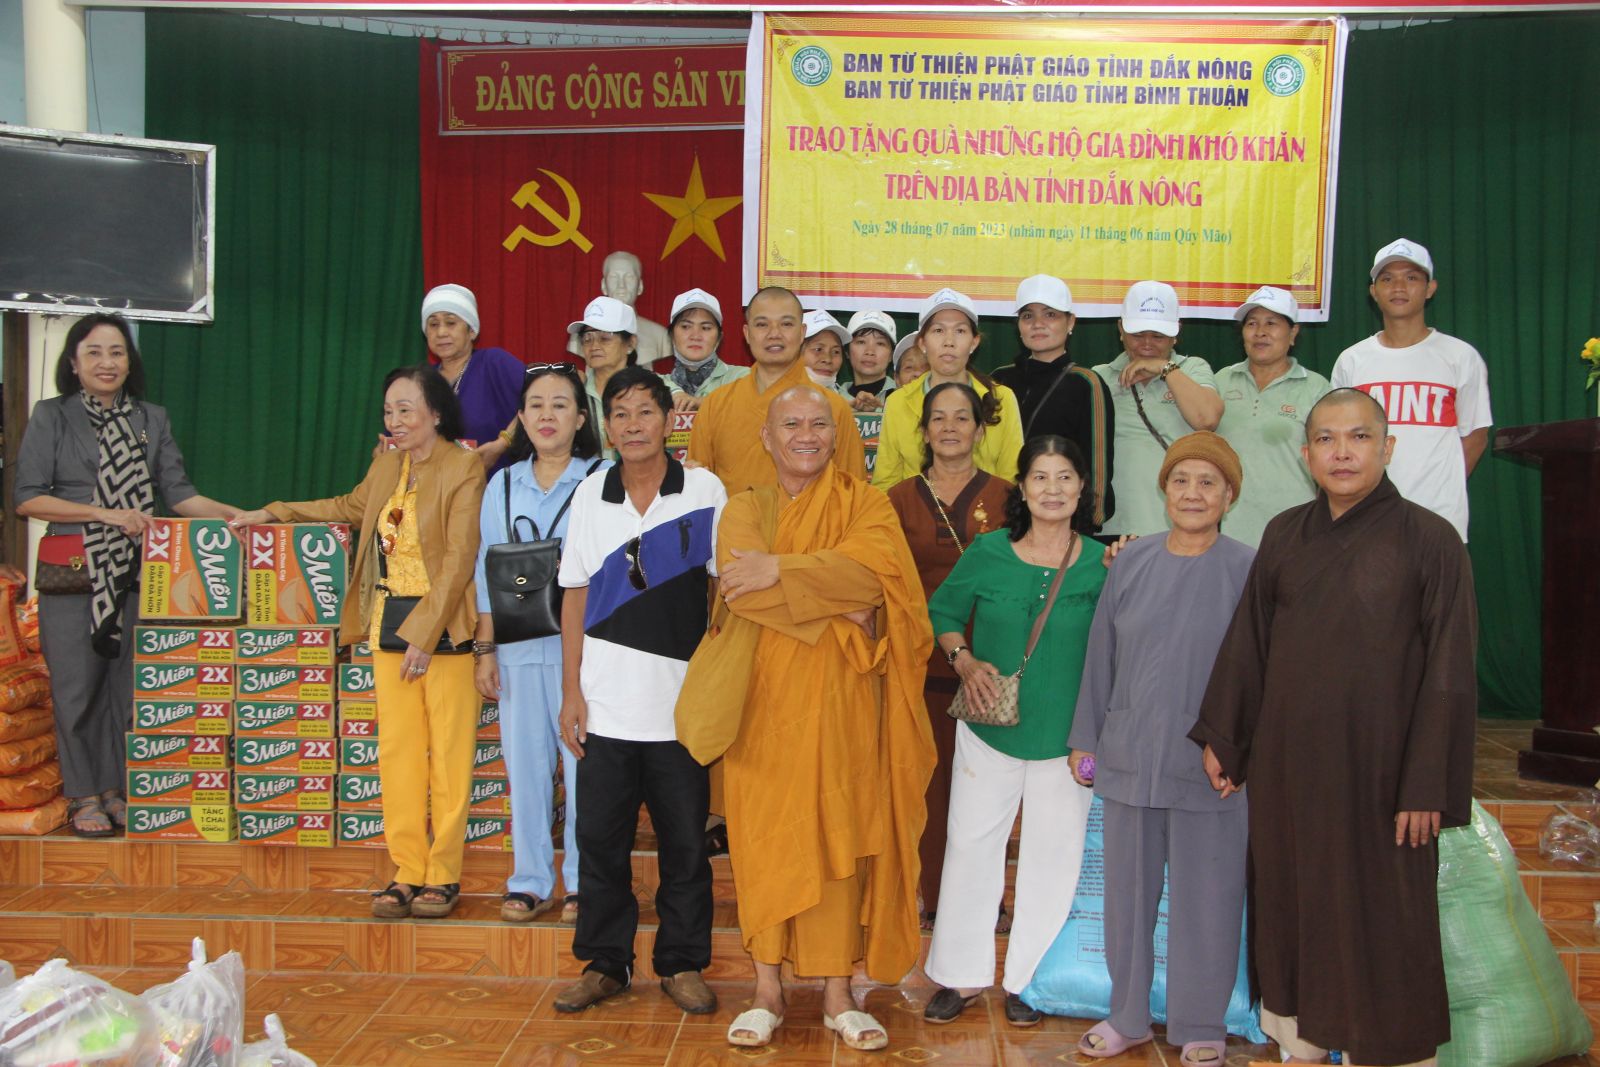 Ban Từ thiện Xã hội Phật giáo tỉnh trao tặng 200 phần quà đến đồng bào khó khăn tại tỉnh Đăk Nông.